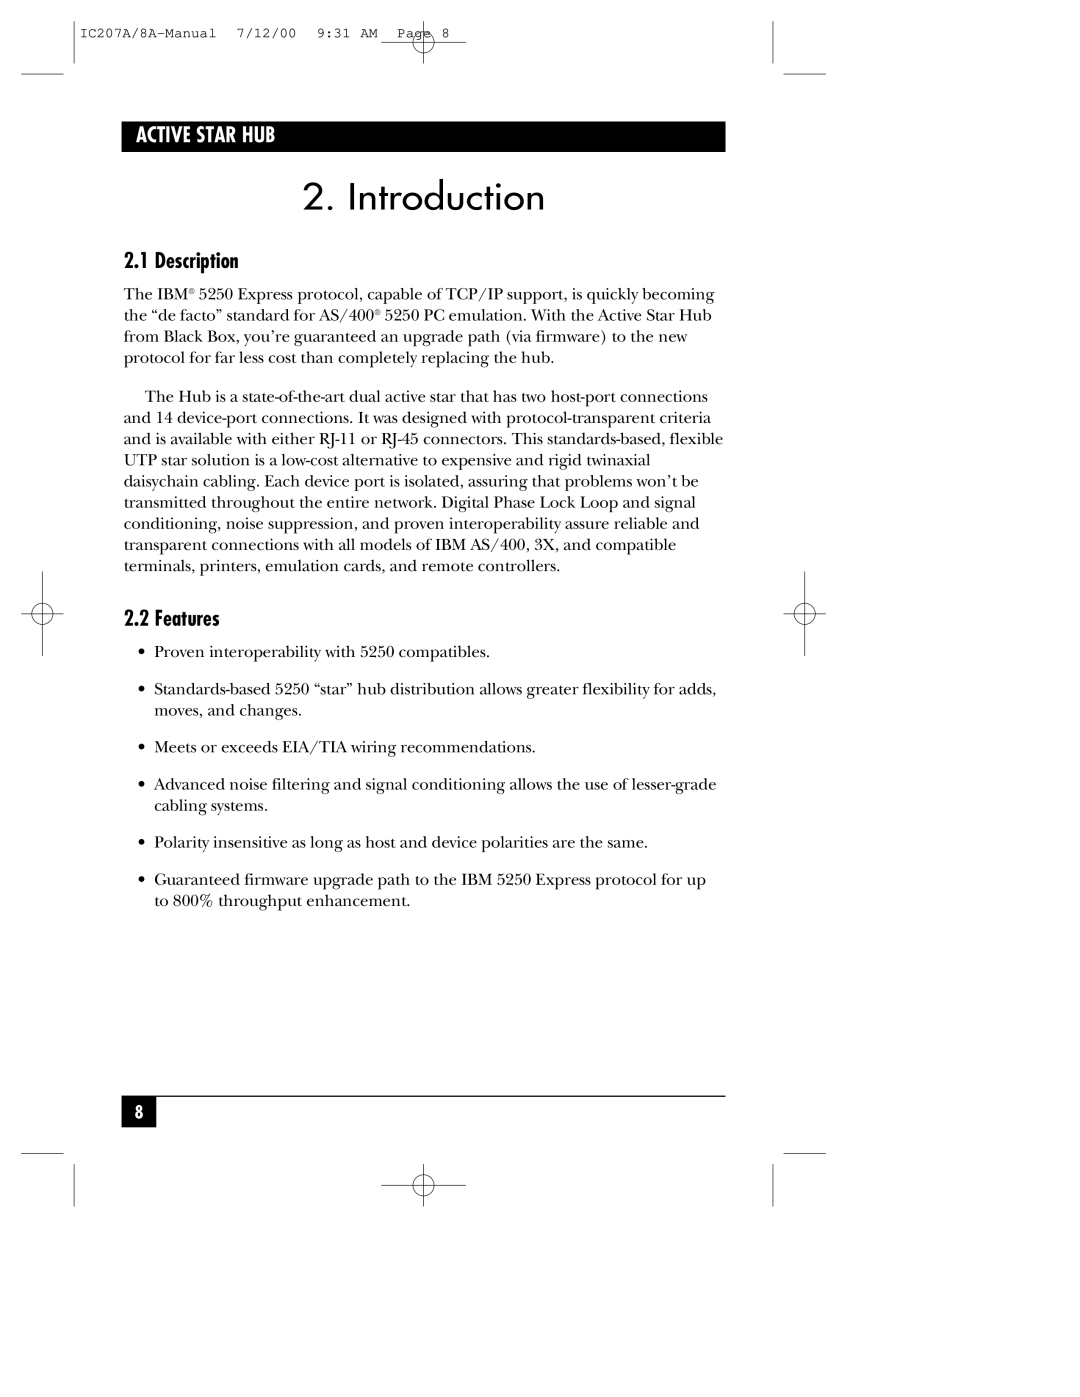 Black Box RJ-45, RJ-11 manual Introduction, Description, Features, Active Star Hub 